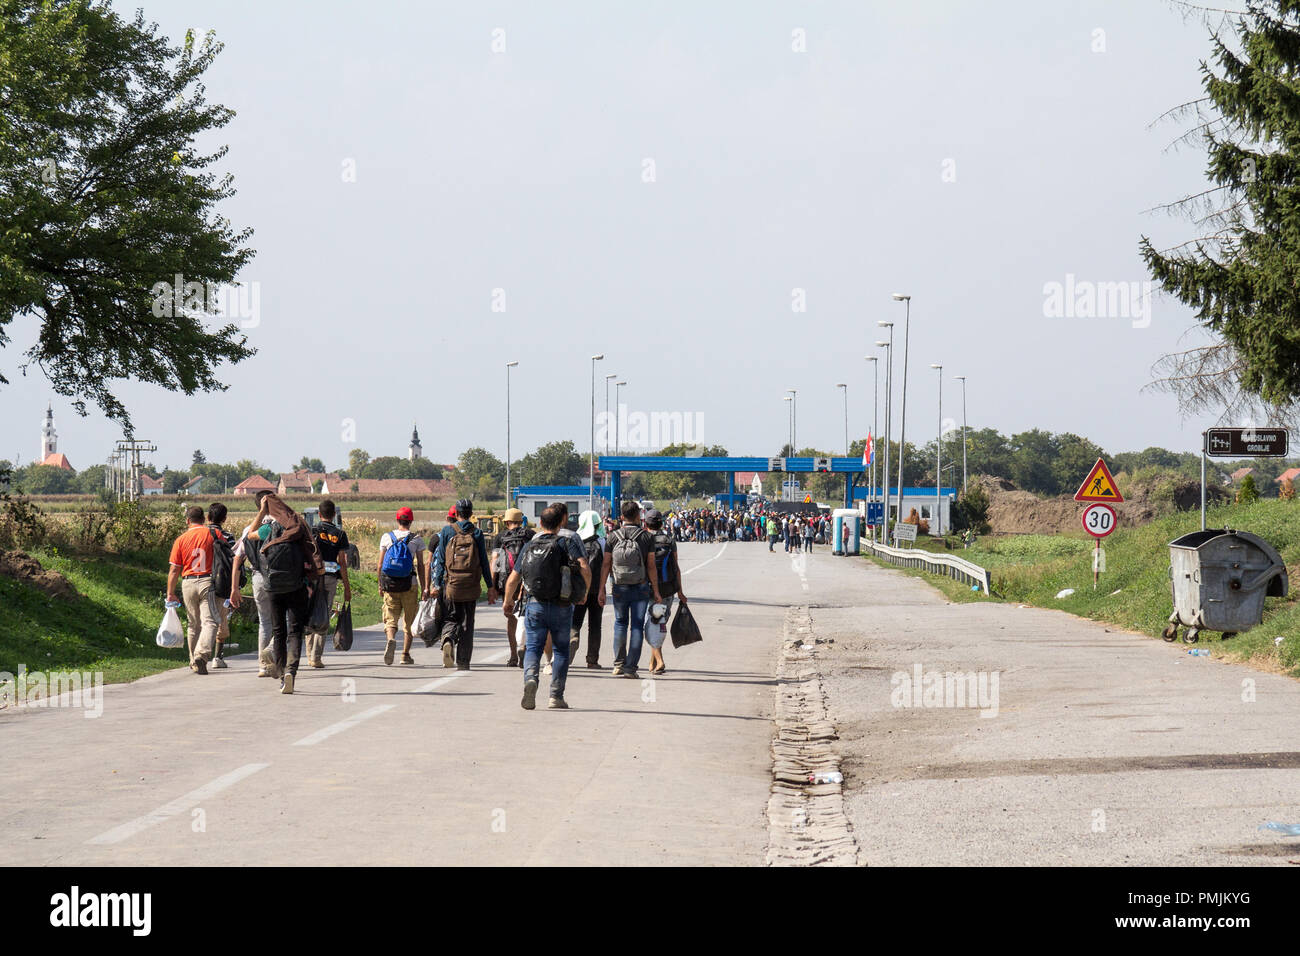 TOVARNIK, Croazia - 19 settembre 2015: raccolta di rifugiati nella parte anteriore del Serbia-Croatia valico di frontiera di Sid Tovarnik sulla rotta dei Balcani, durante Foto Stock